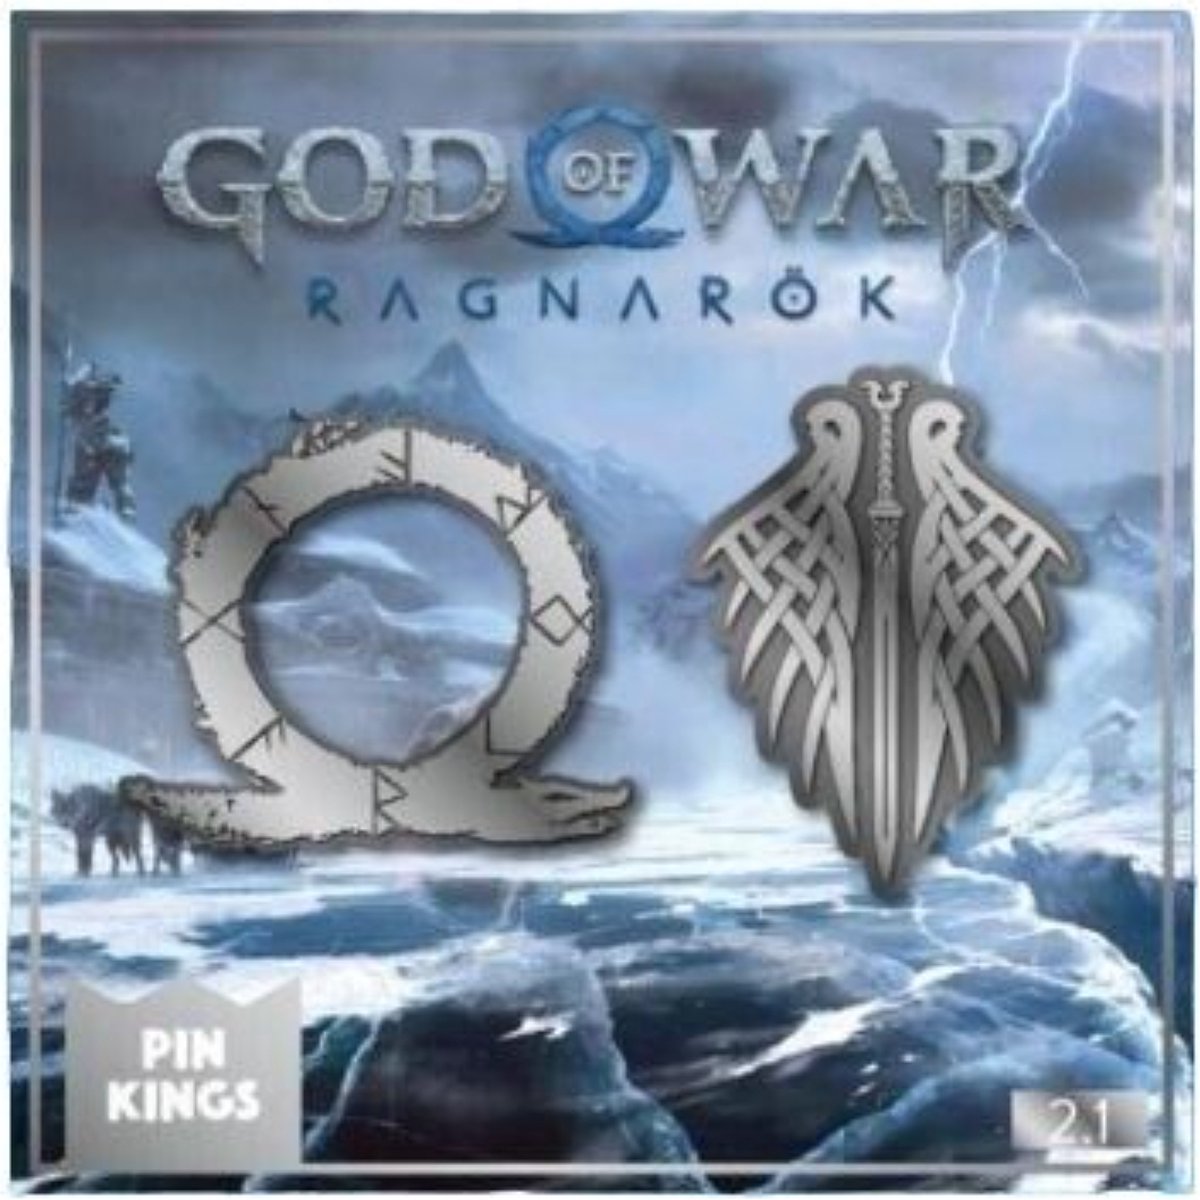 Numskull - God of War Ragnarok - Pin Kings 2.1